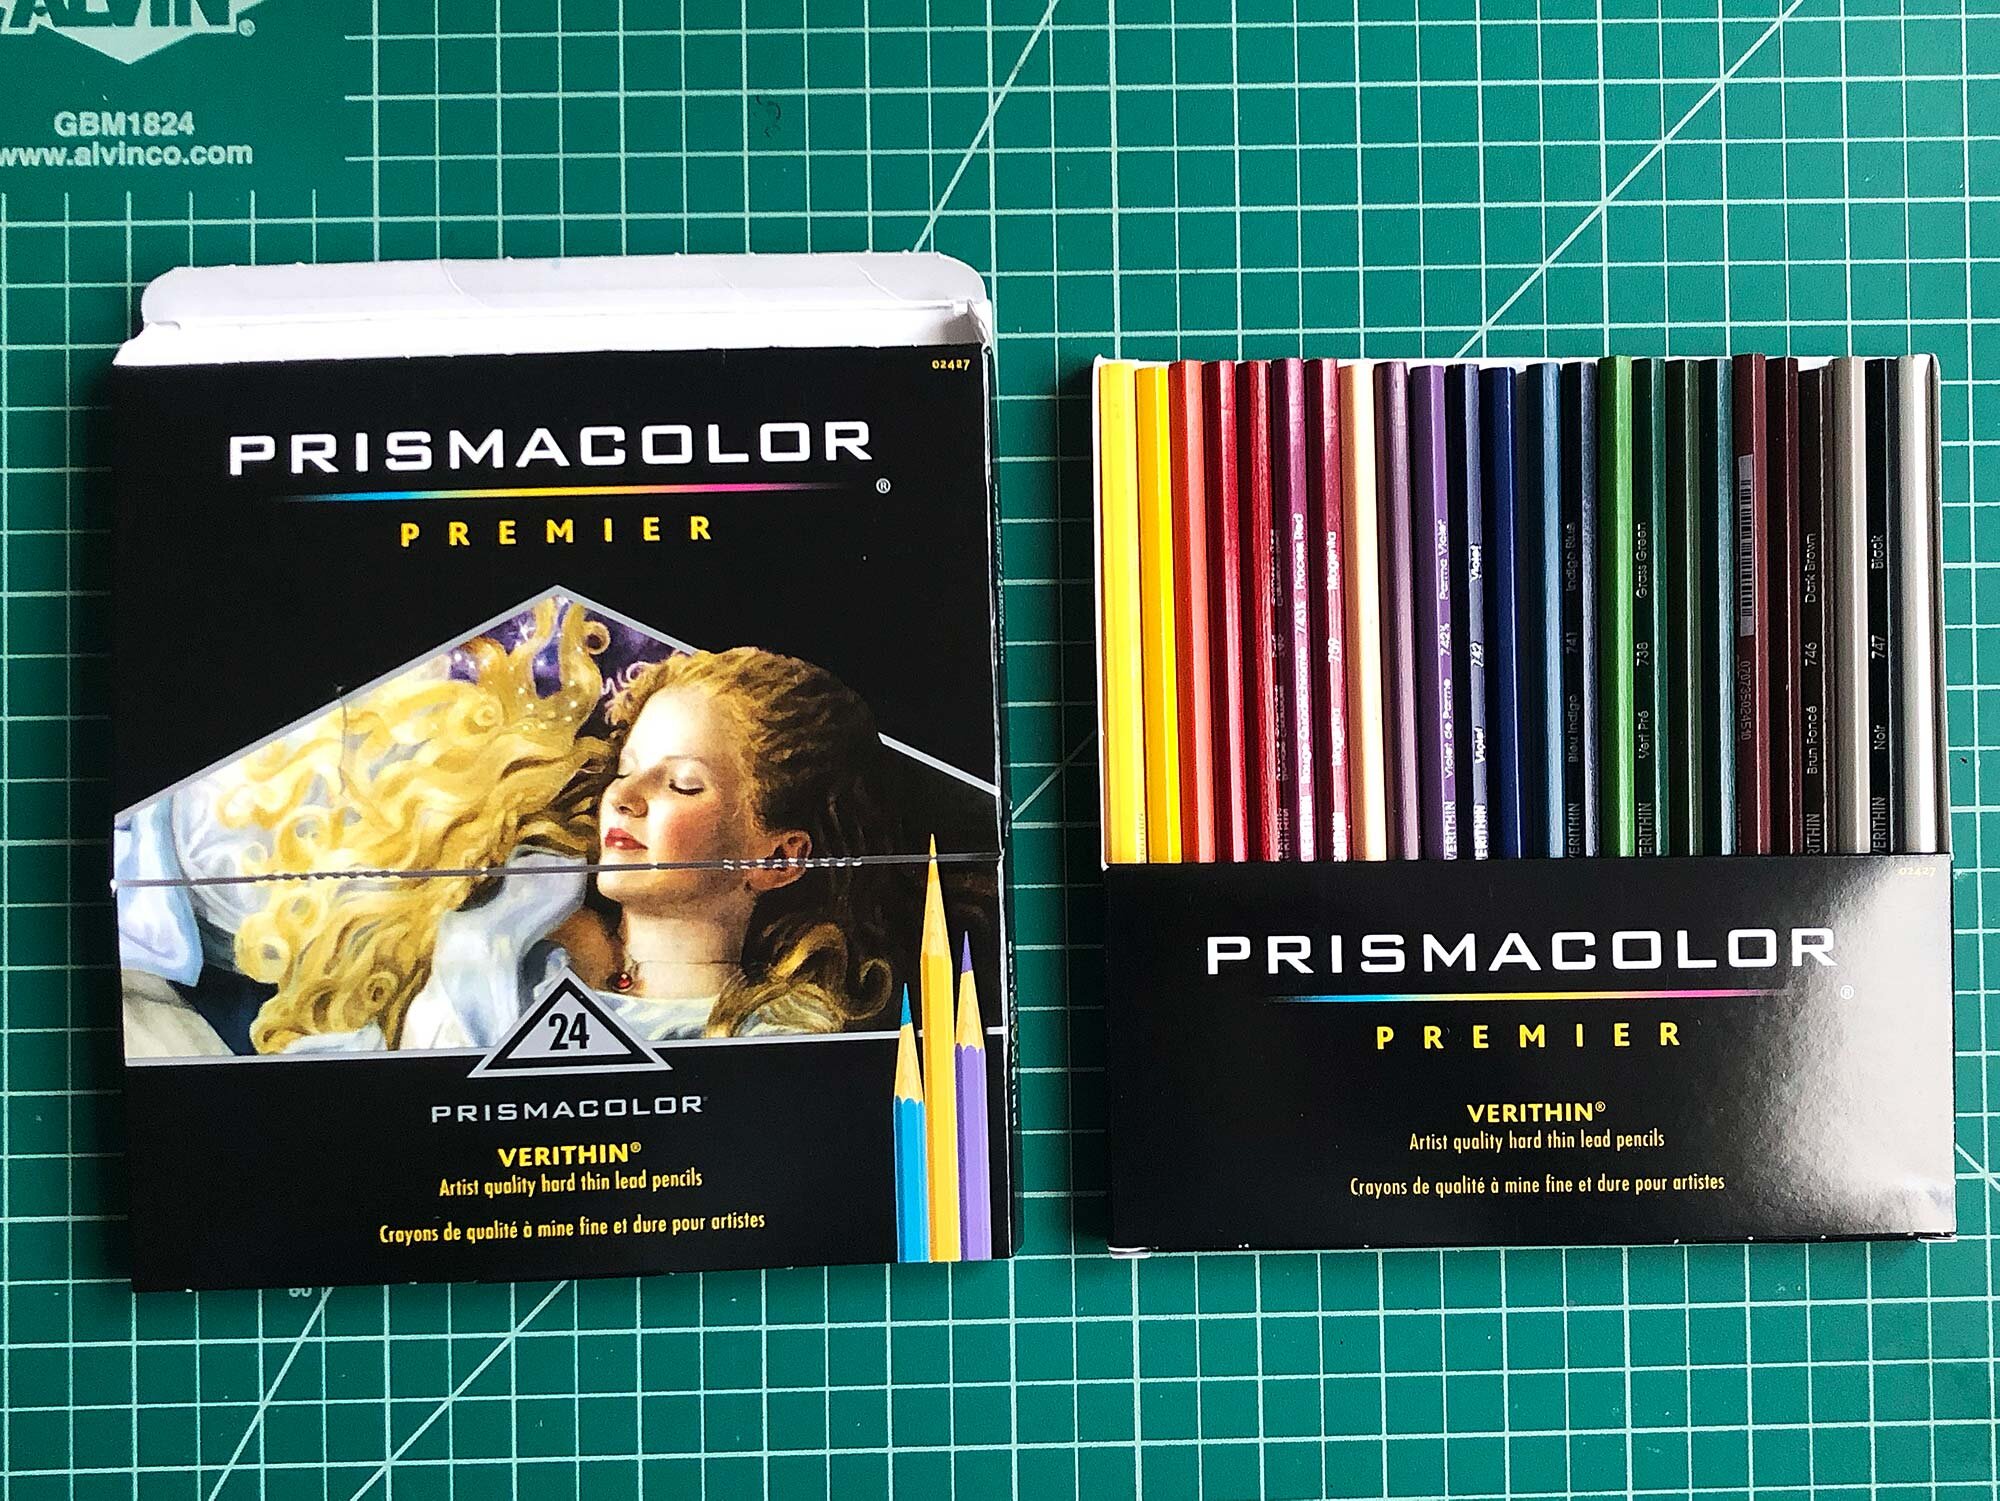 Prismacolor Verithin 24 Count Cardboard Box